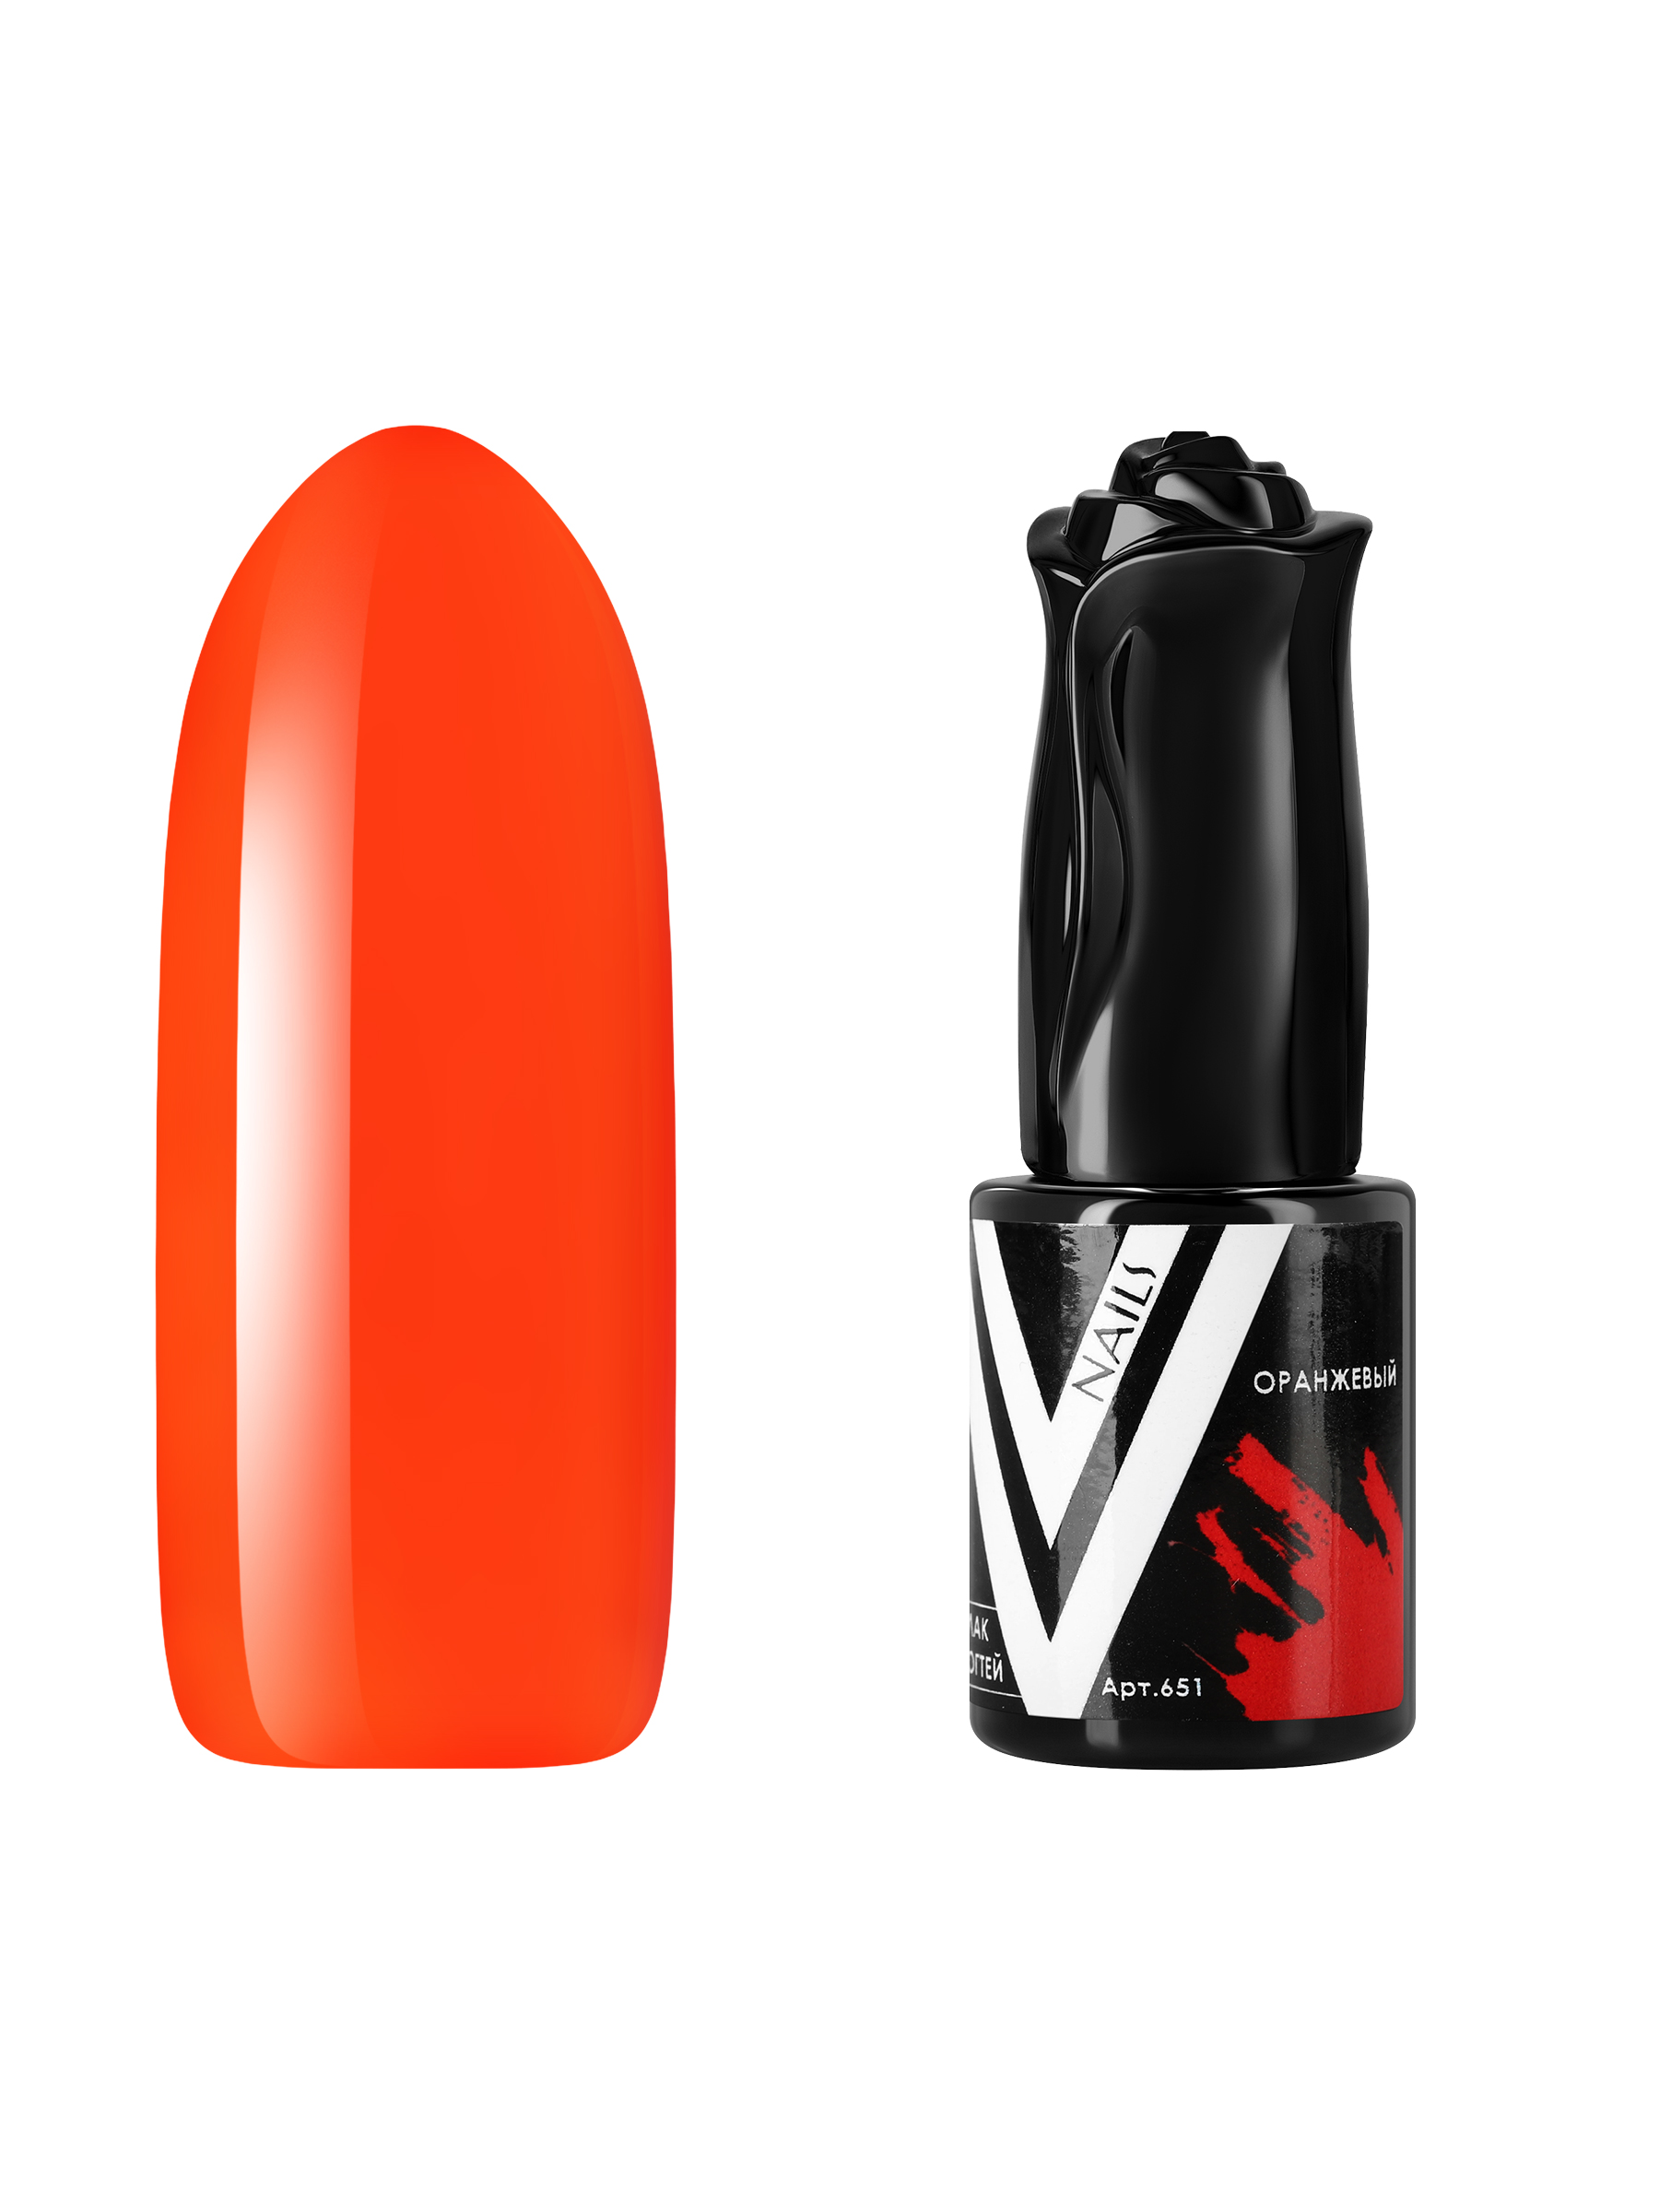 Гель-лак витражный Vogue Nails для аквариумного дизайна, прозрачный, оранжевый, 10 мл ошейник дарэлл простой стандарт 1 слой безразмерный кожаный 30 ммх62 см оранжевый